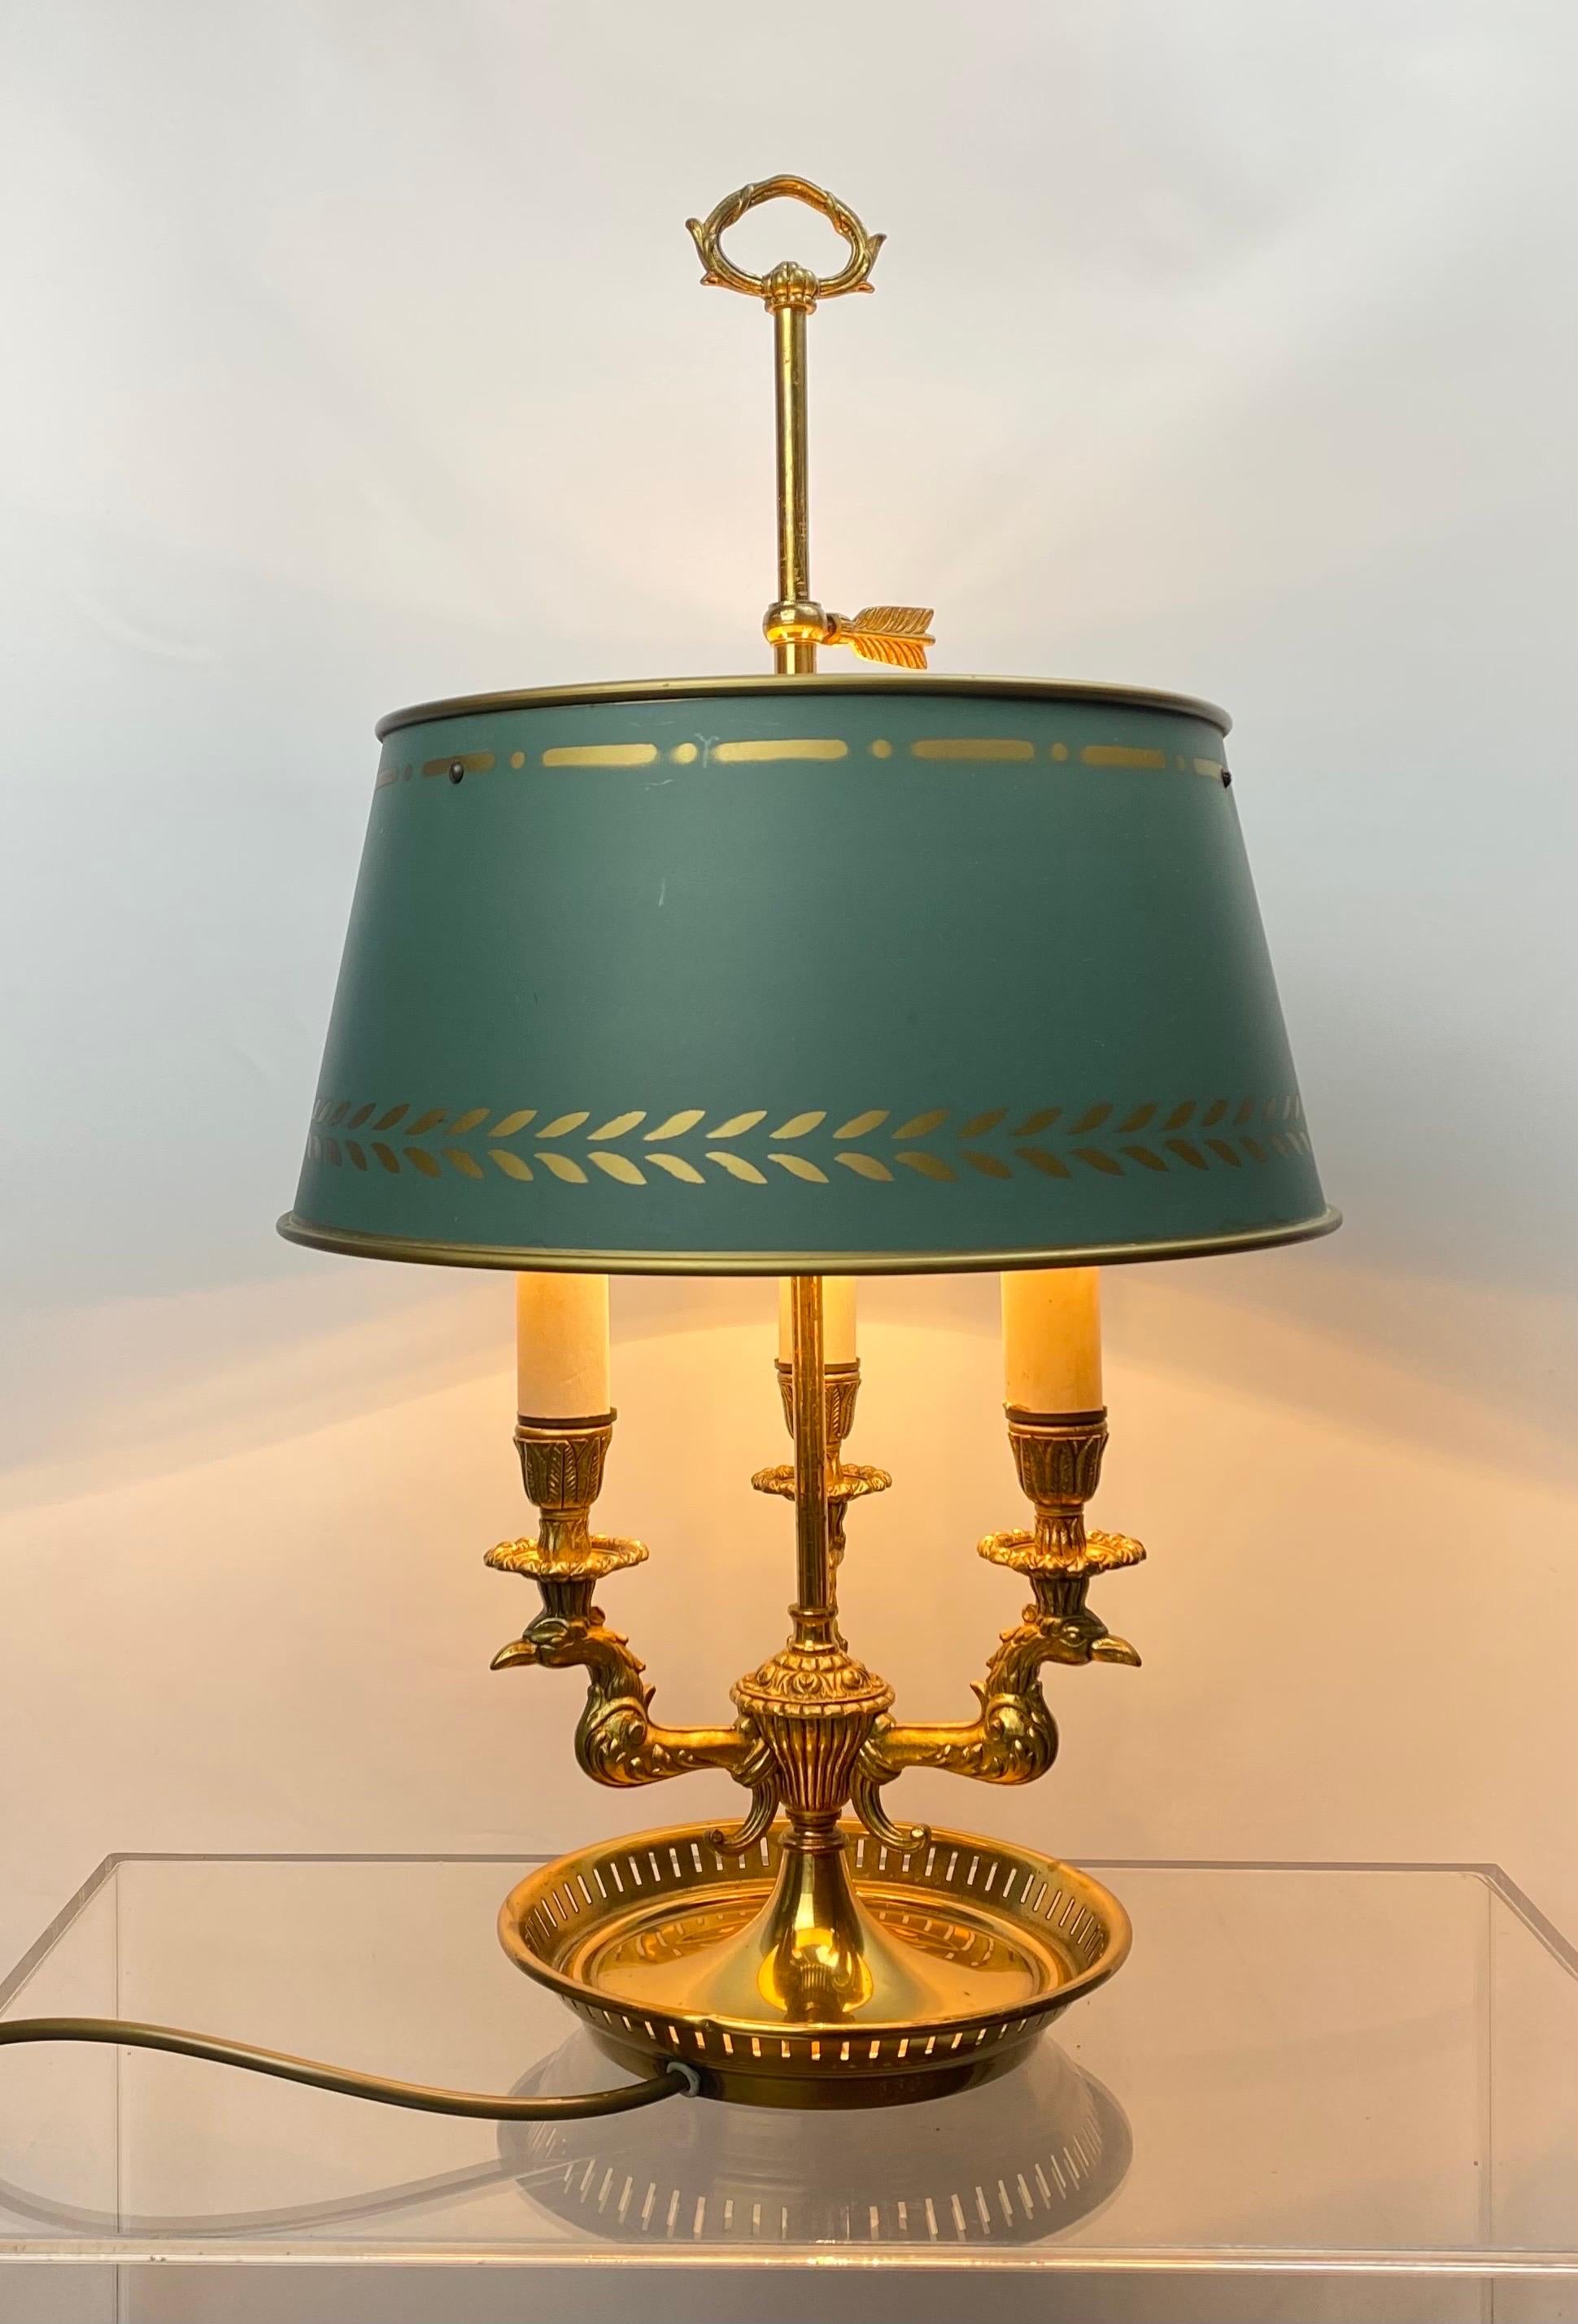 Eine schöne 20. Jahrhundert klassische Französisch Empire vergoldete Bronze Bouillotte Lampe mit 3 skulpturalen Eagle Arms .
Die Bouillotte-Lampe hat einen klassischen dunkelgrün lackierten Schirm mit goldenem Blattdekor, verstellbar.
 